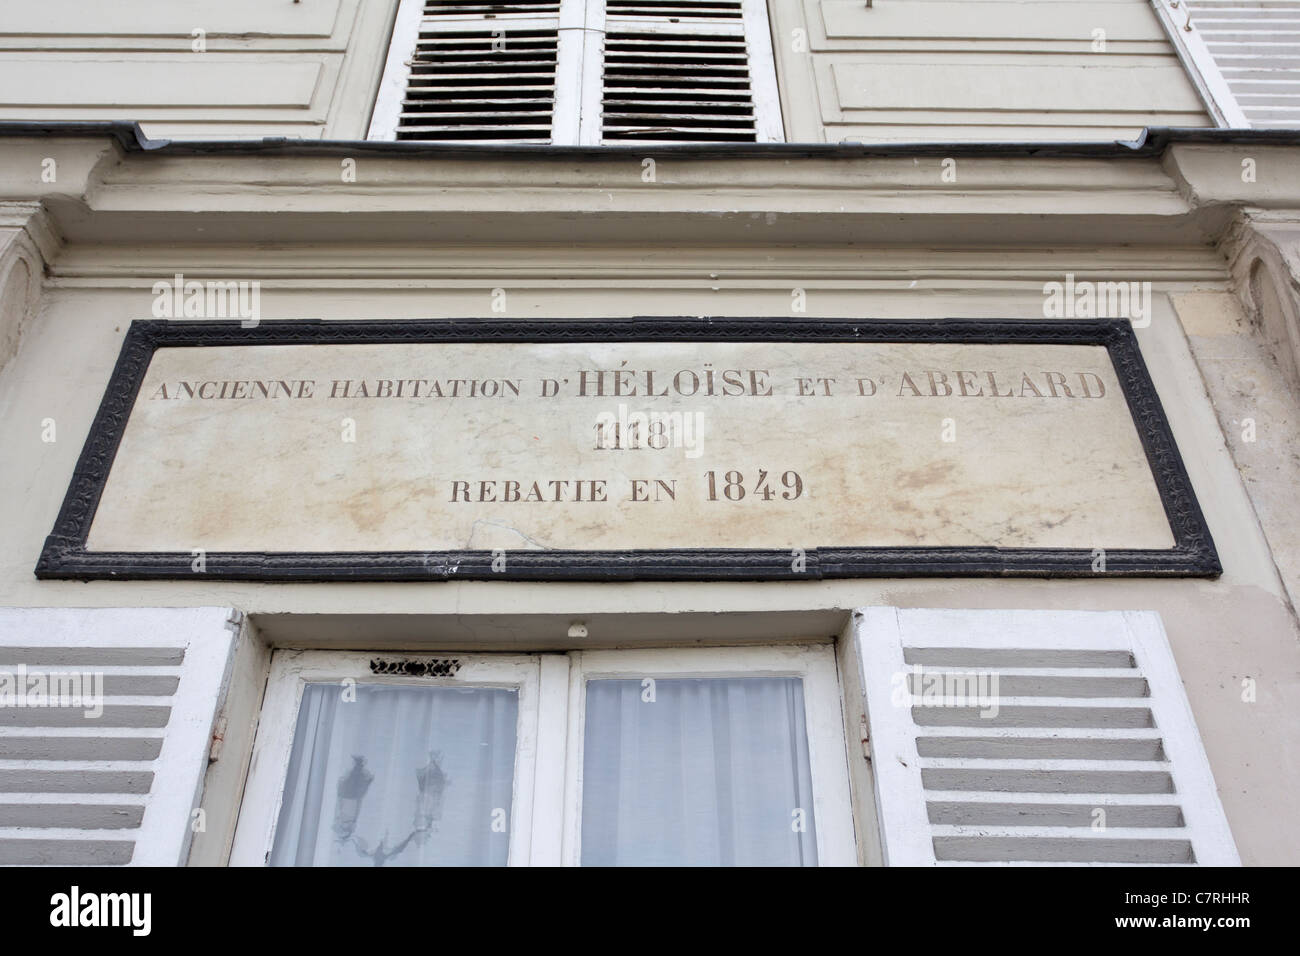 Sito dove gli amanti della tragica Abelardo e Heloise una volta vivevano, Quai aux Fleurs, Ile de la Cite, Parigi, Ile de France, Francia Foto Stock